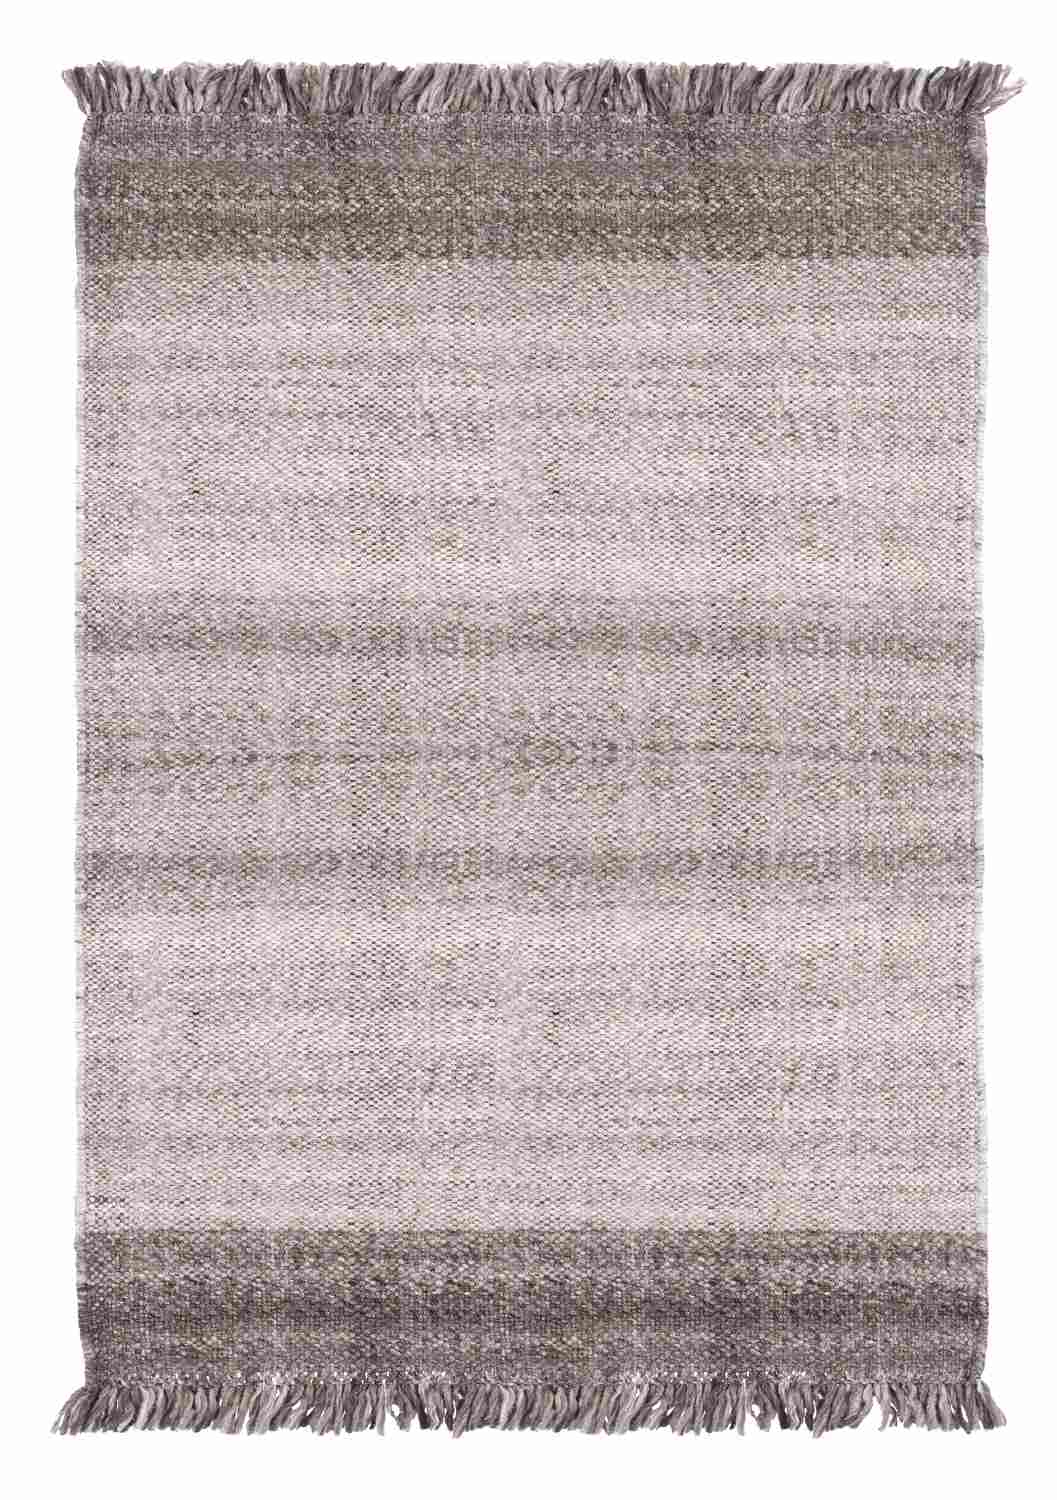 Der Teppich Kalpani überzeugt mit seinem Klassischen Design. Gefertigt wurde er aus 100% Polyester. Der Teppich besitzt eine braunen Farbton und die Maße von 160x230 cm.